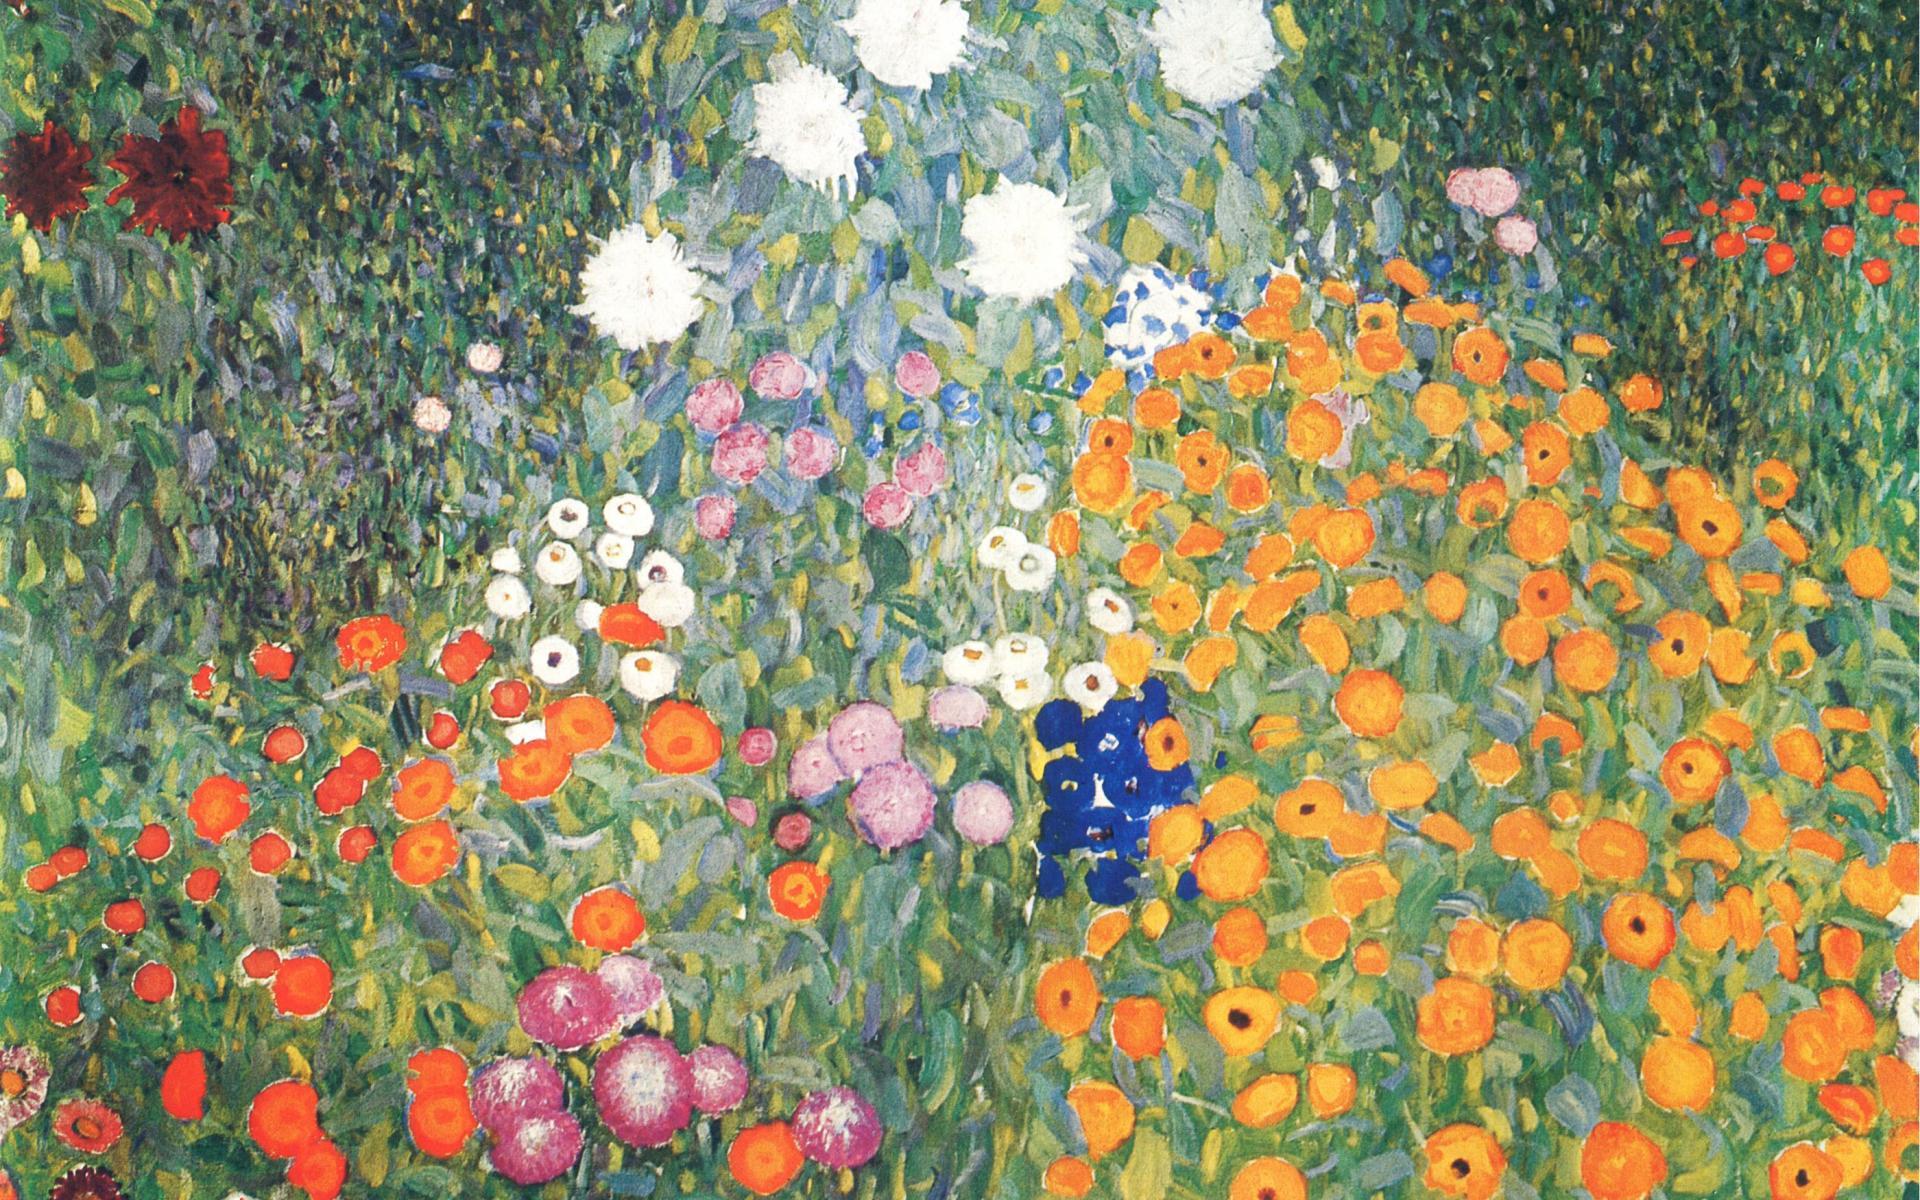 Wallpaper Desktop Gustav Klimt 1920 X 1200 993 Kb Jpeg. TUTORIAL